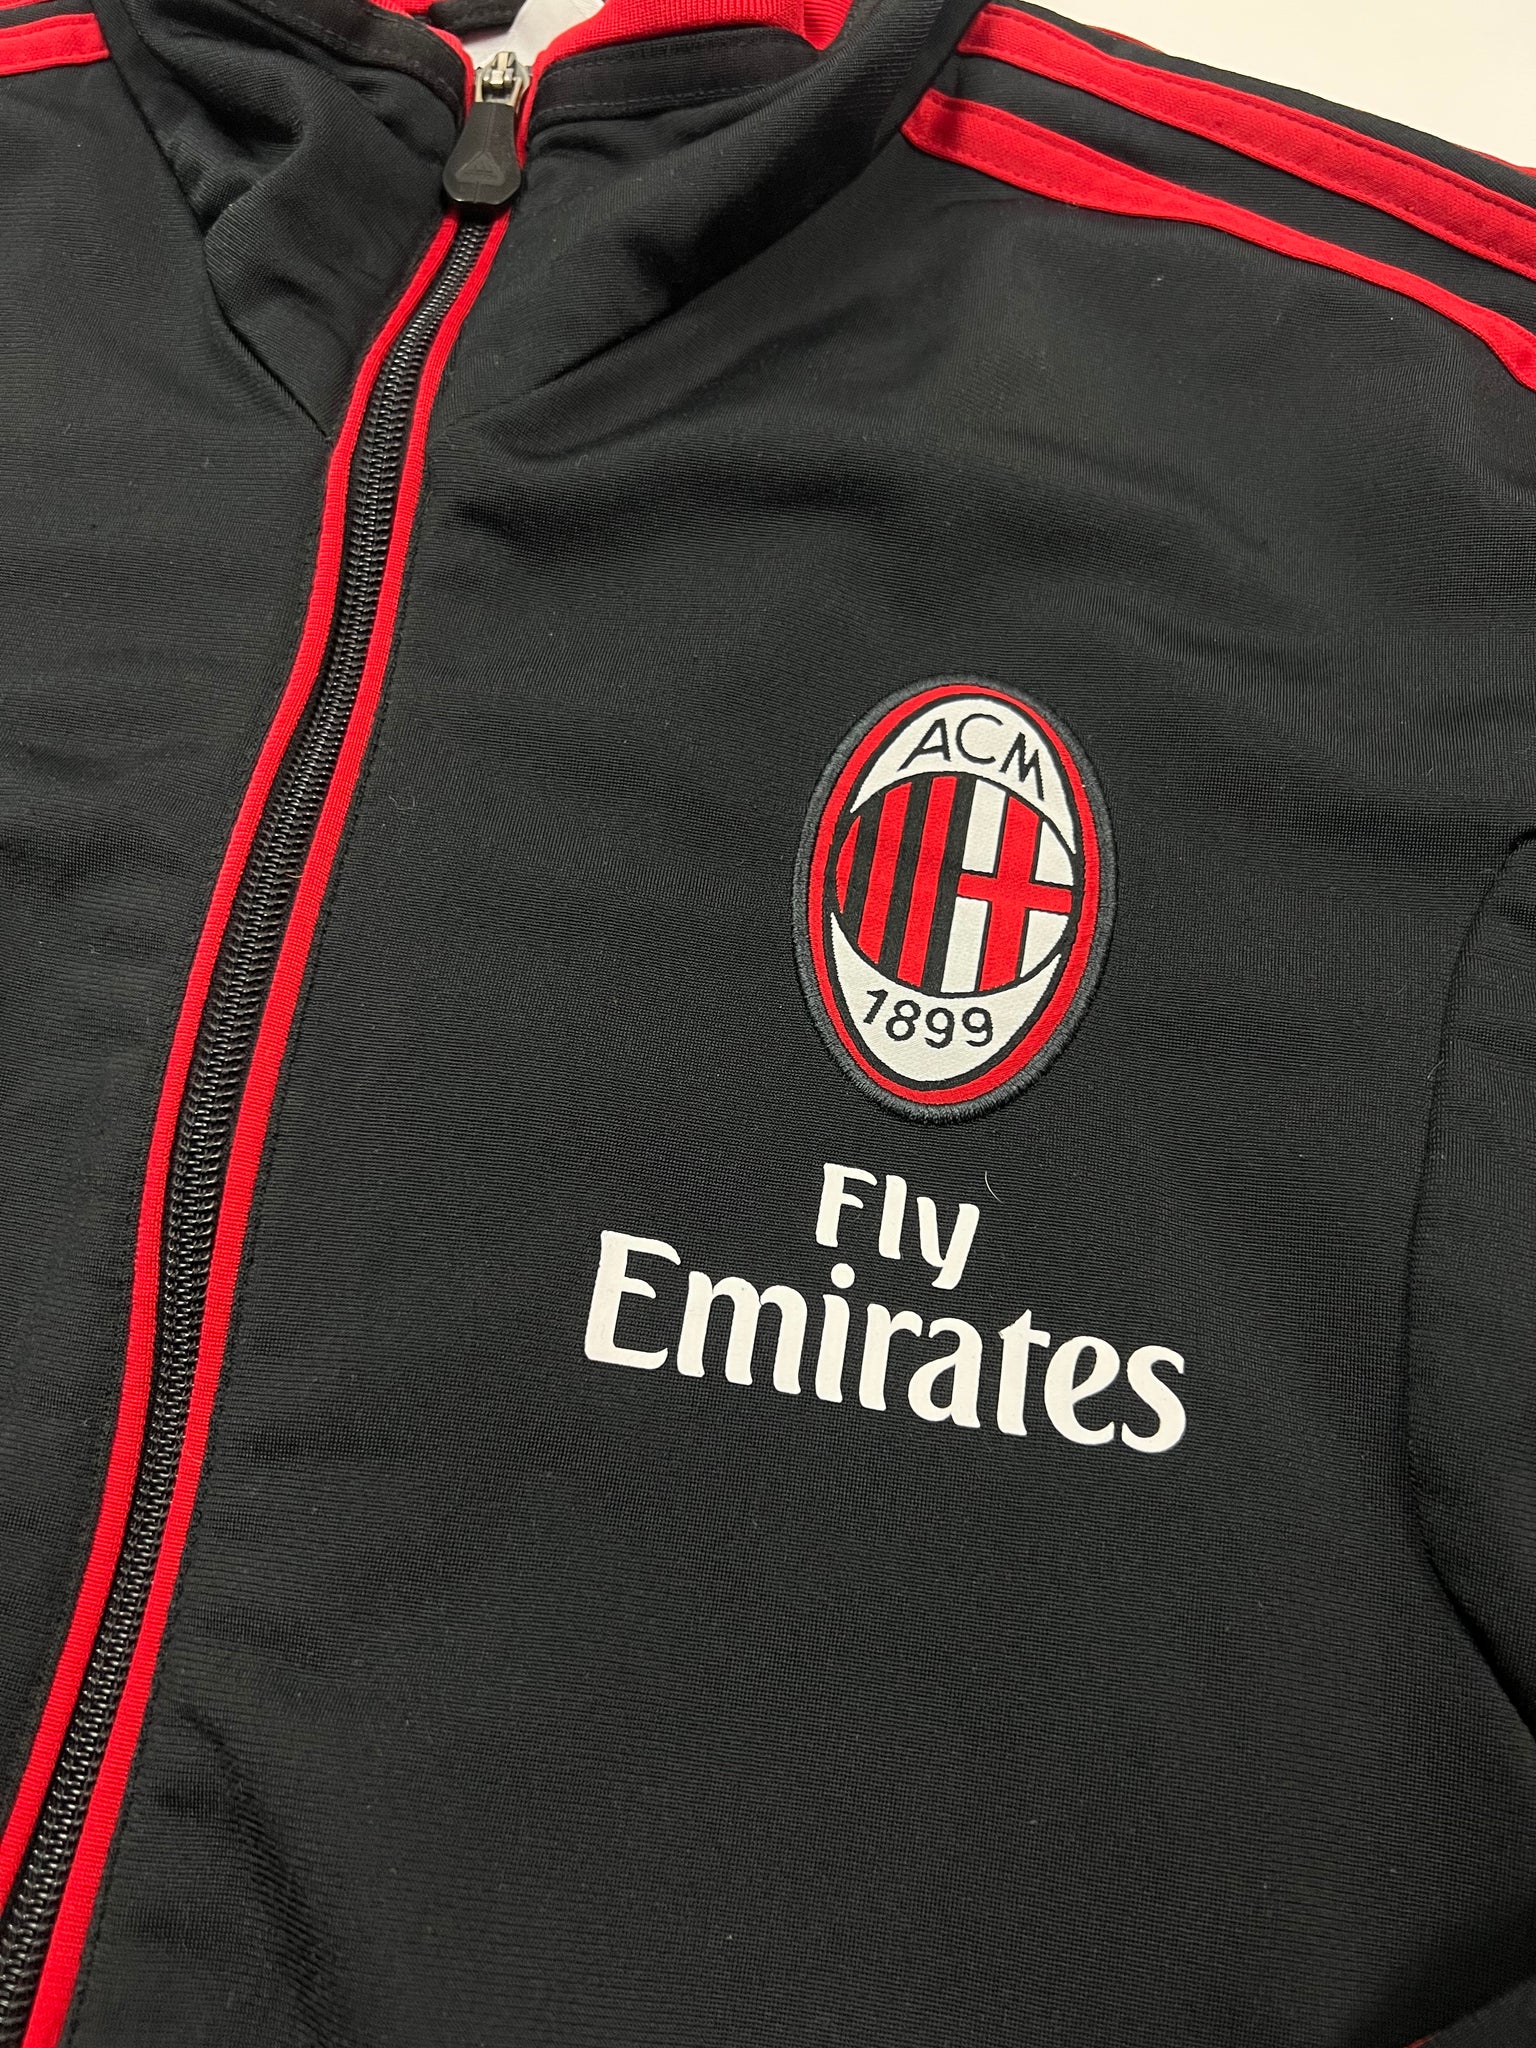 Adidas AC Milan Track Jacket (M)